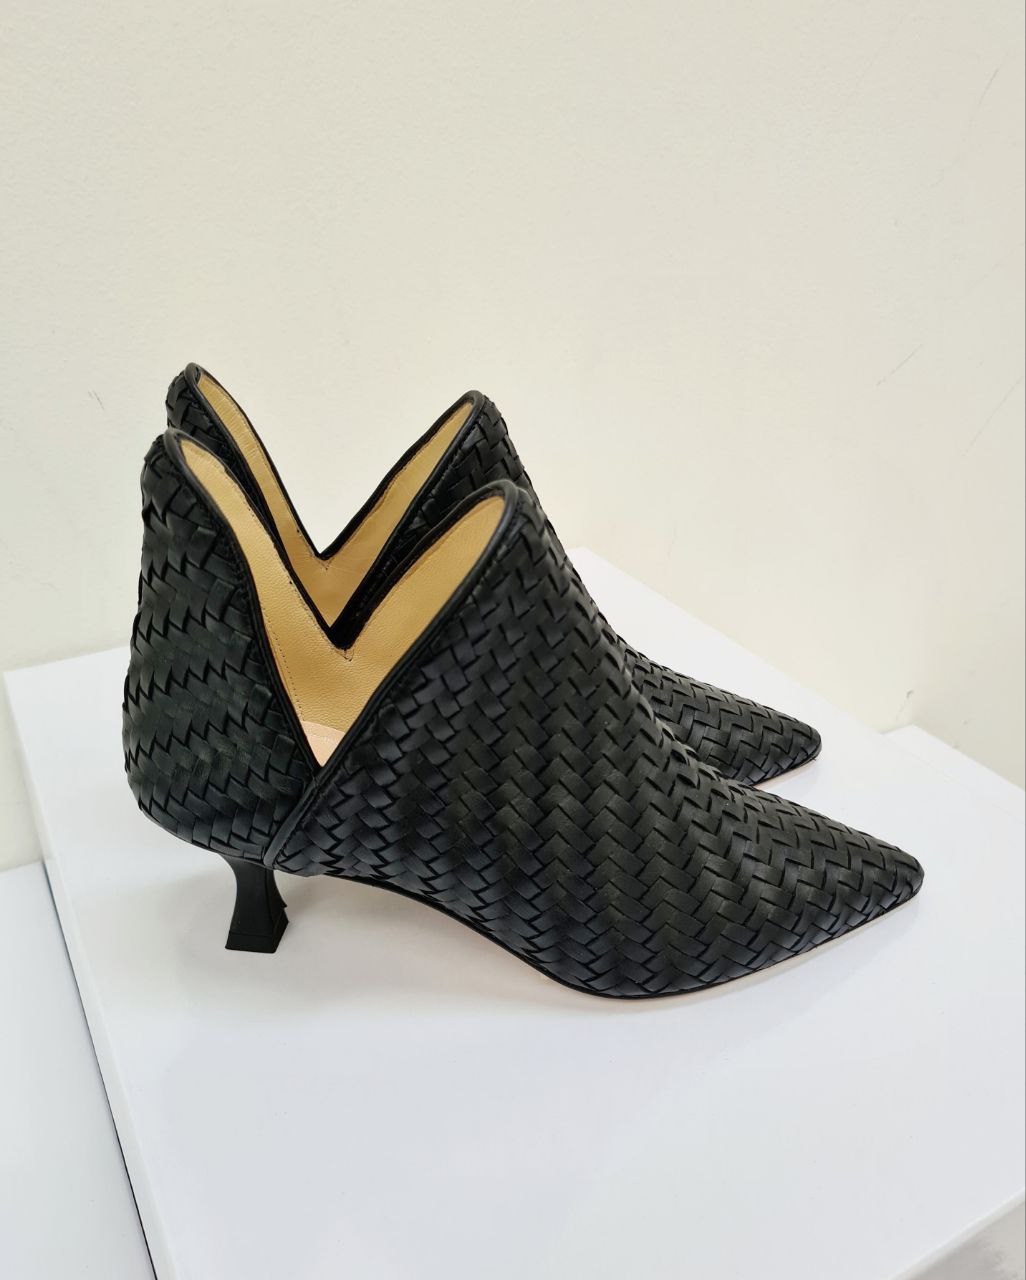 Итальянская одежда, бренд Spazio moda - Обувь, арт. 73248320